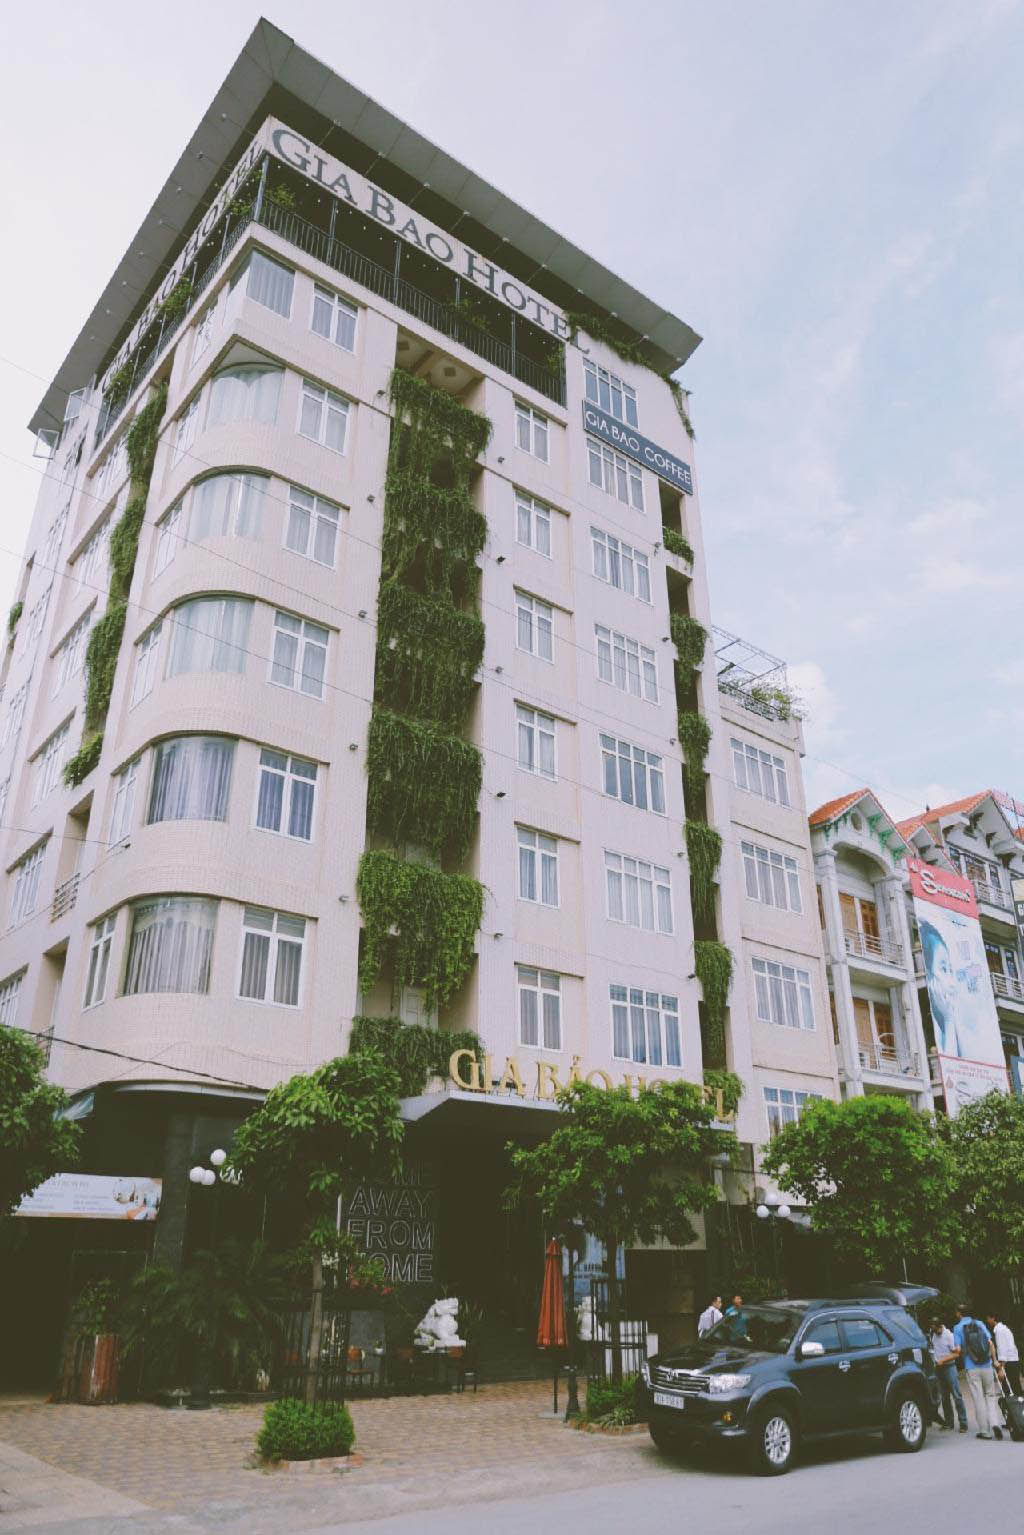 Gợi Ý 13+ Khách Sạn Bắc Ninh Đẹp, Dịch Vụ Tốt & Giá Rẻ Nhất